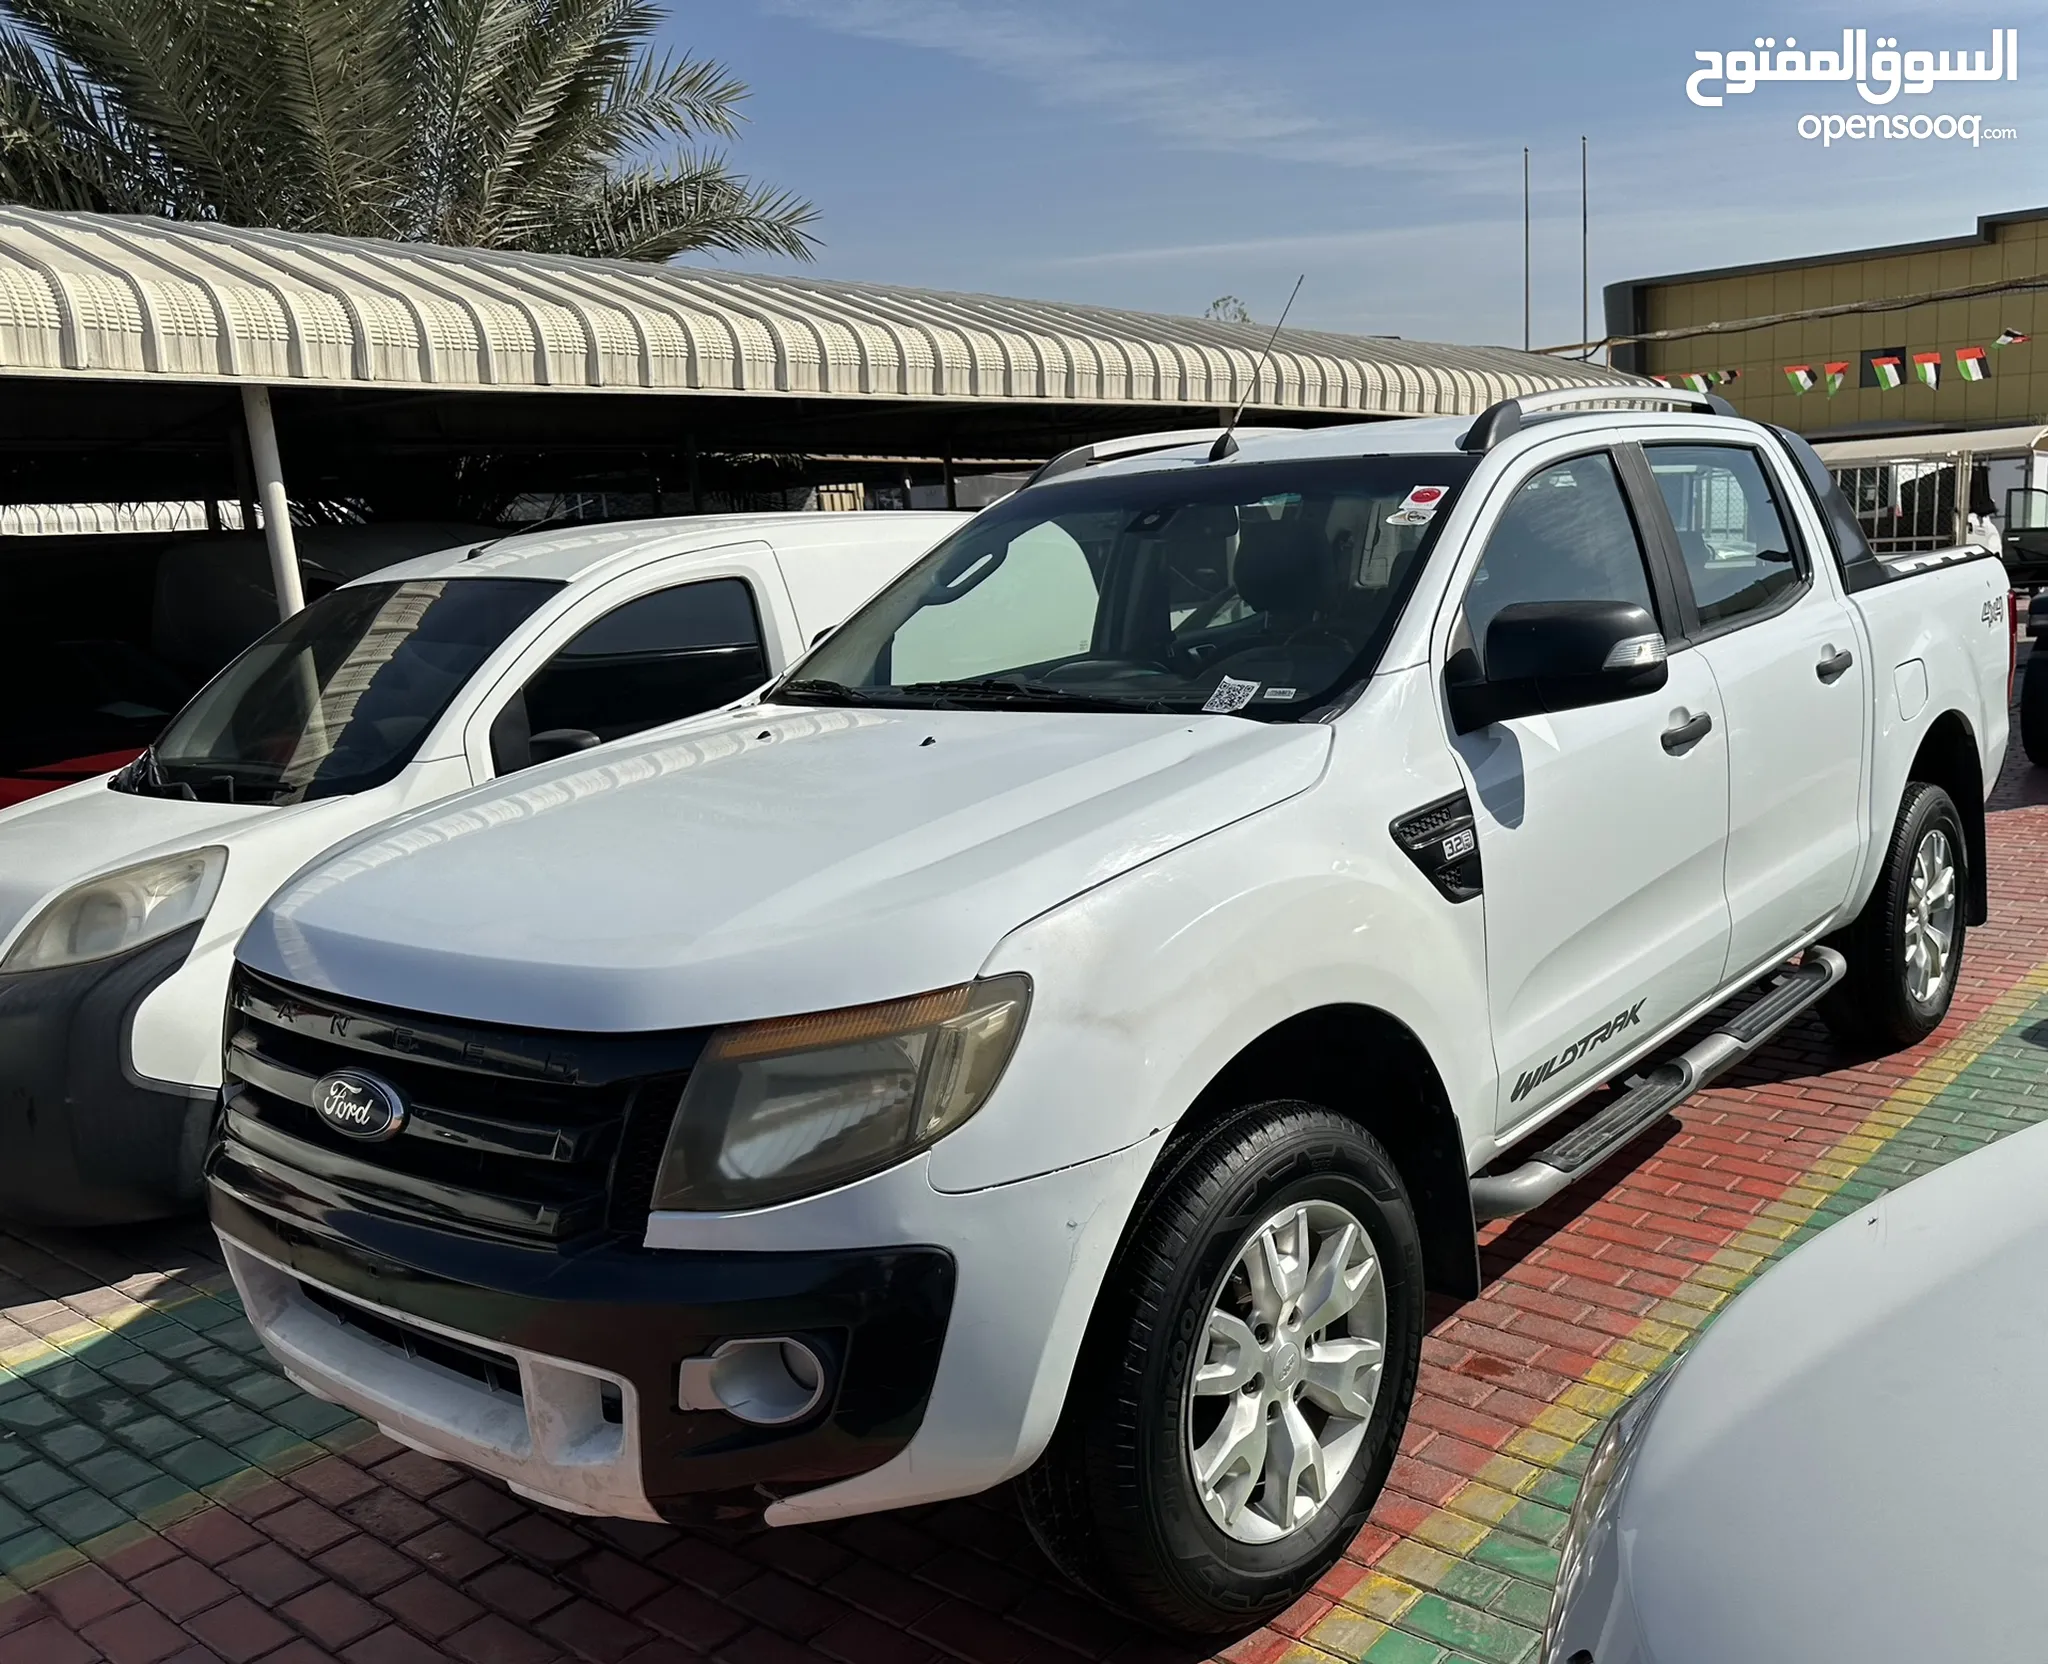 Ford Ranger, UAE